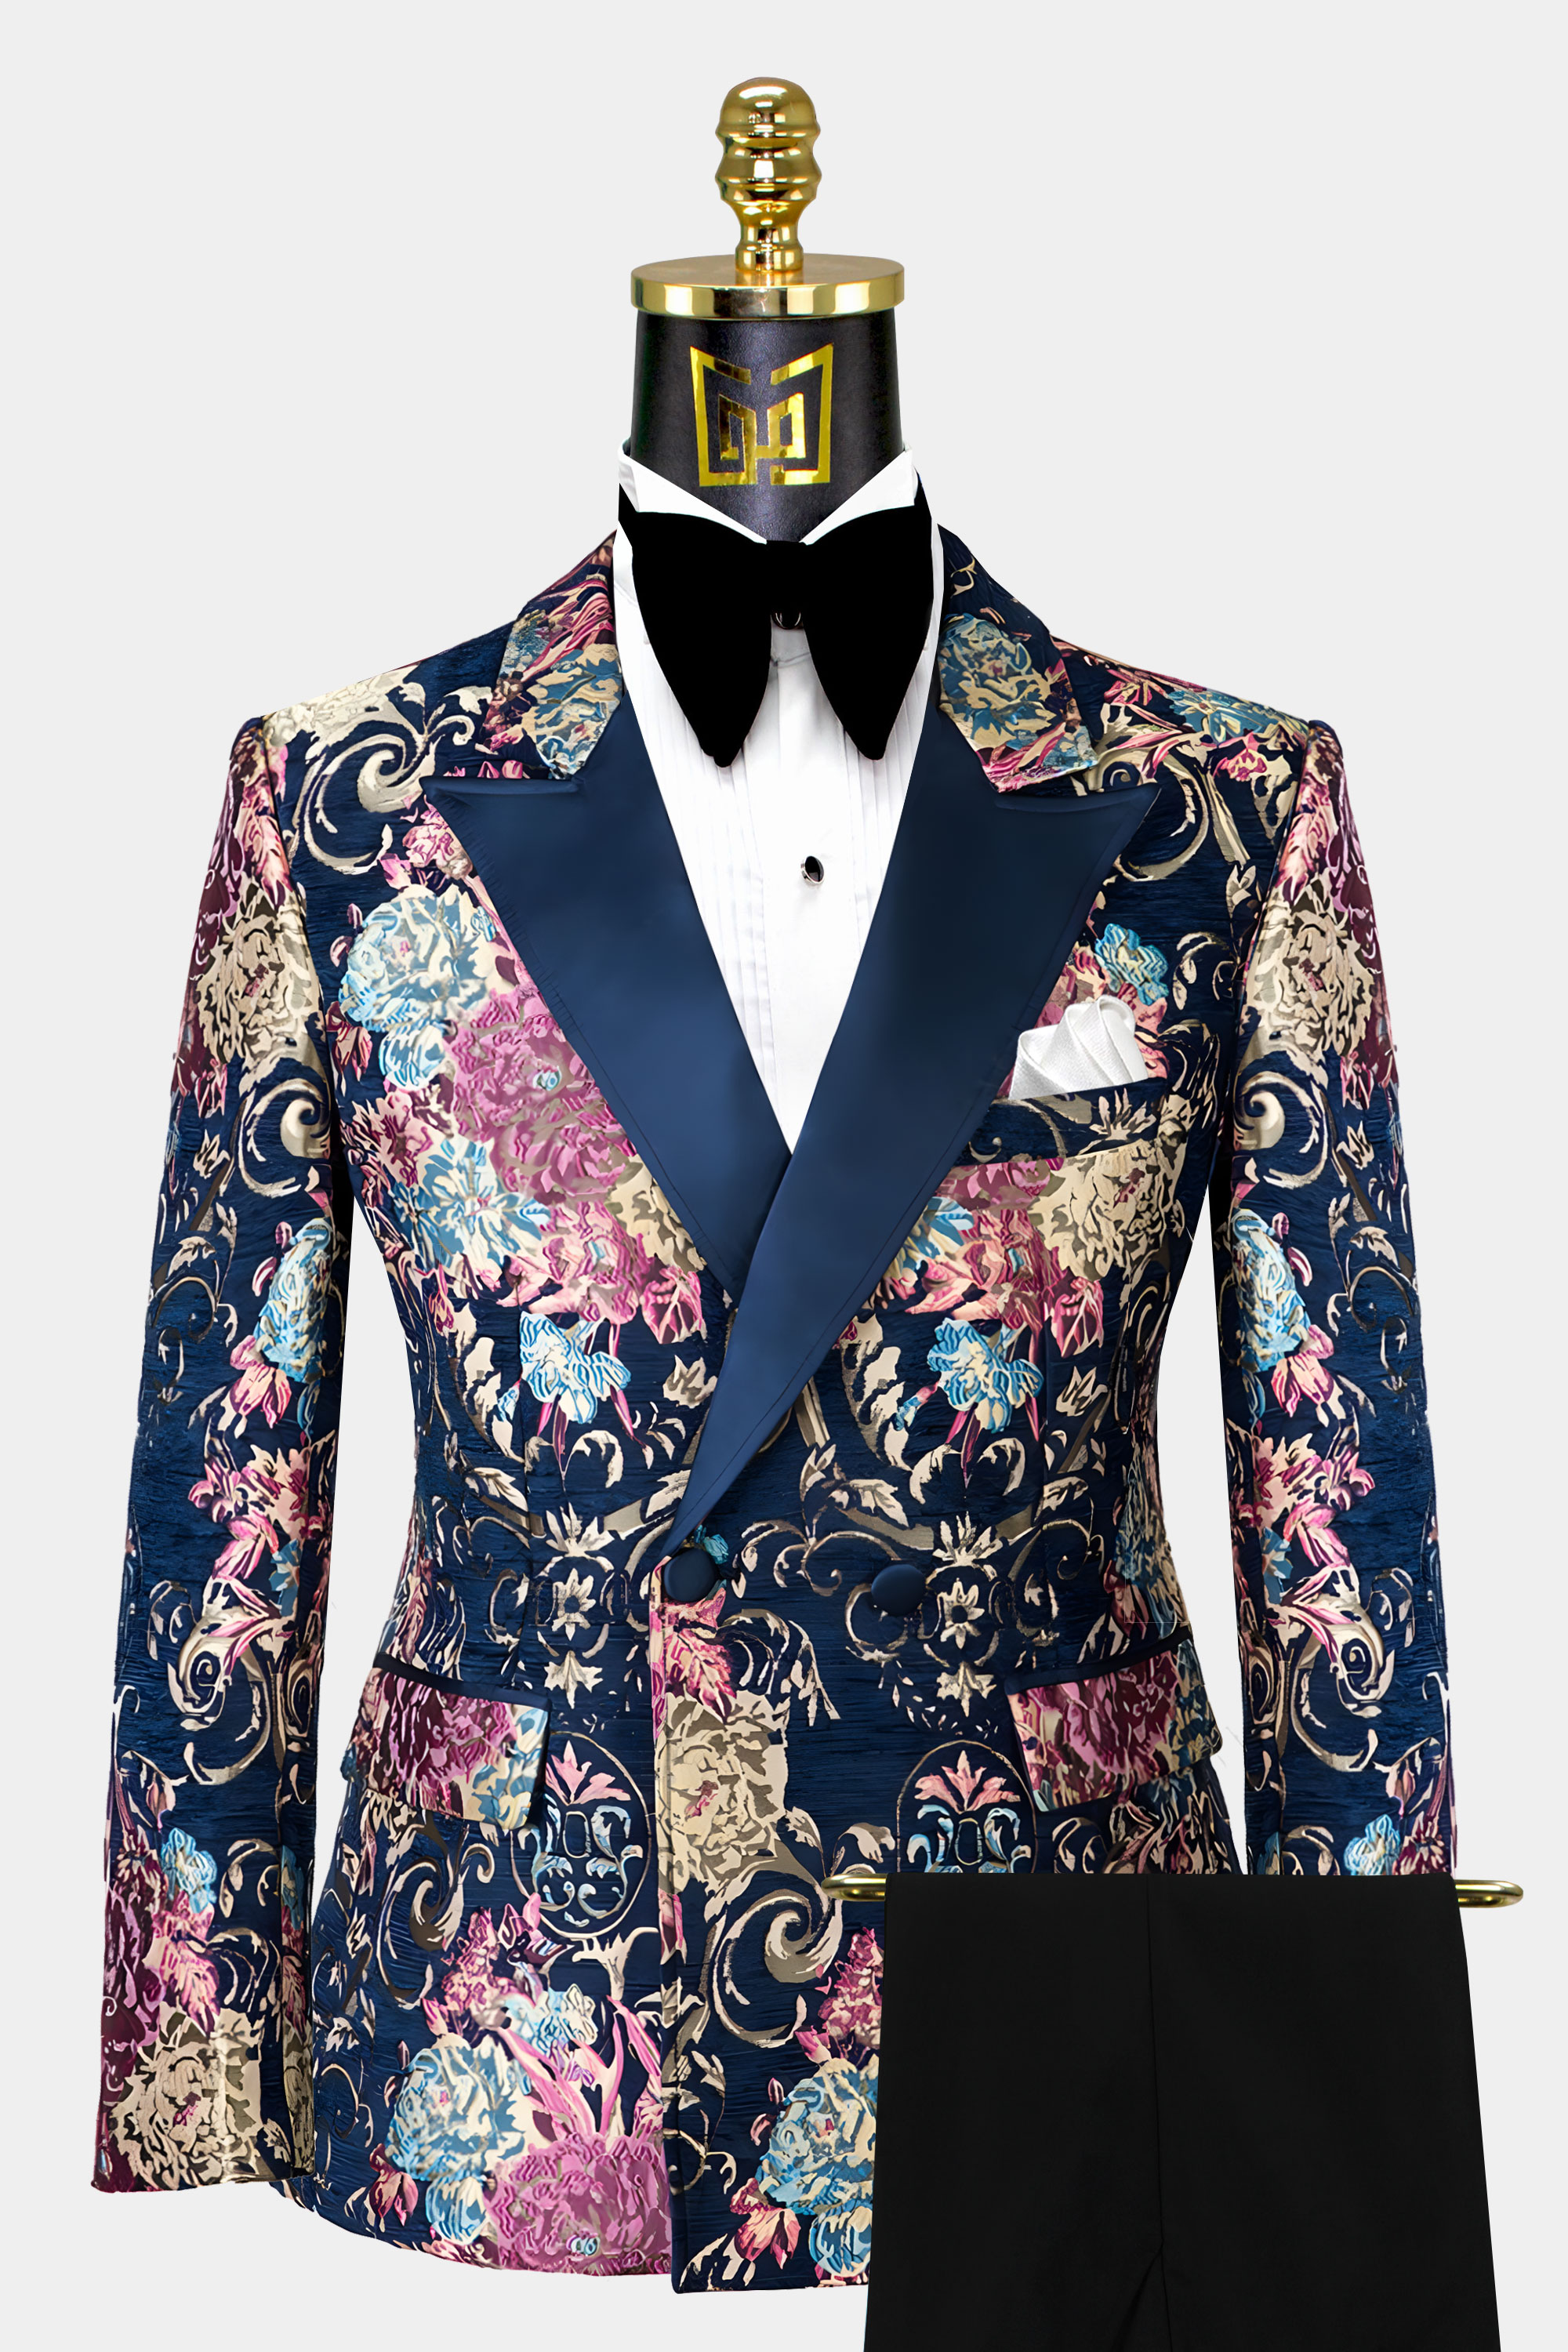 Navy-Blue-and-Gold-Tuxedo-Wedding-Groom-Prom-Suit-for-Men-from-Gentlemansguru.com